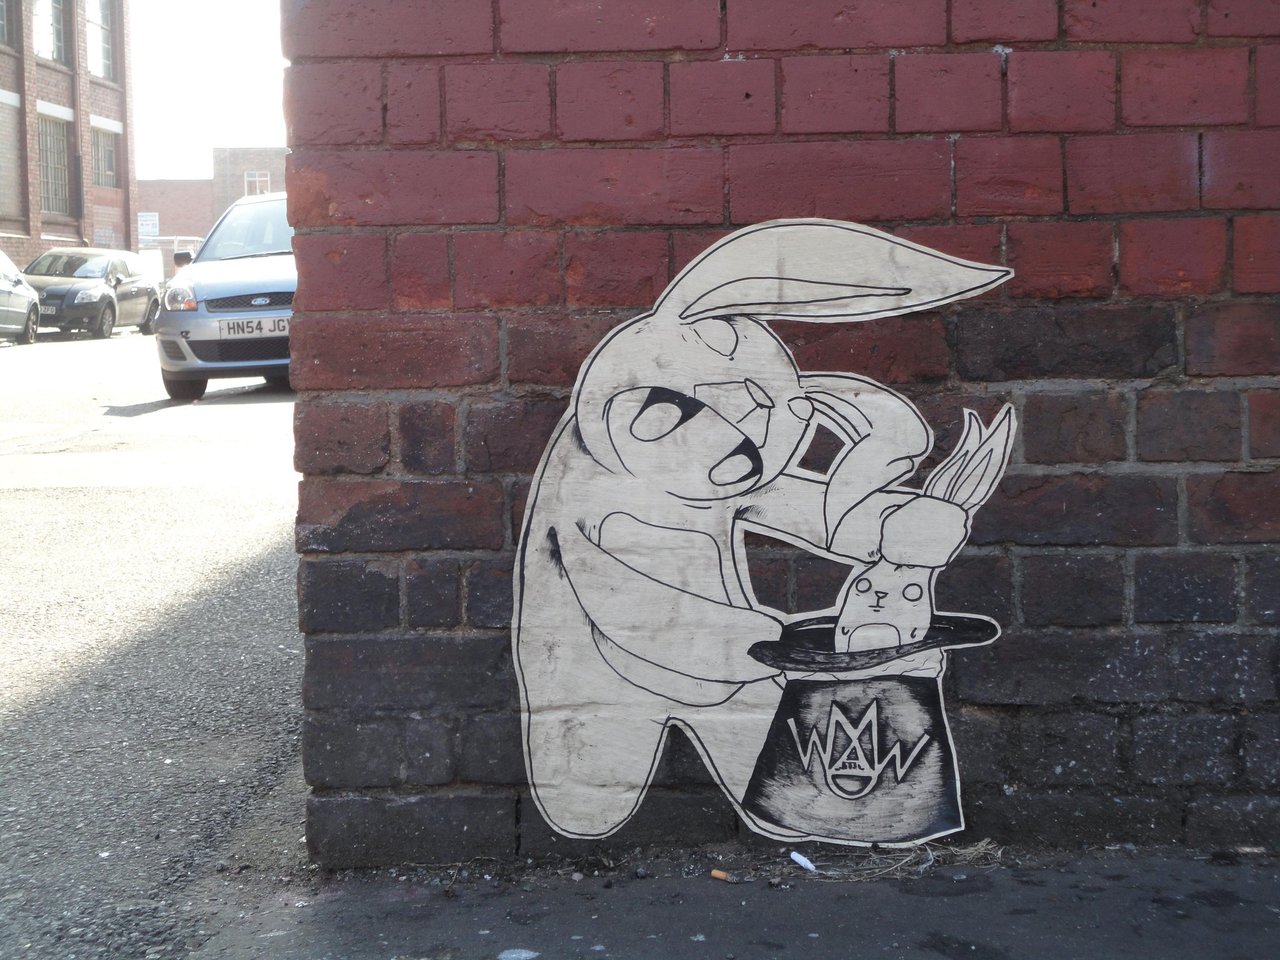 RT @djcolatron: Mad Wew magicing rabbits out of a hat all down Bradford St #Digbeth #streetart #graffiti #Birmingham http://t.co/zhuWIGnpcJ